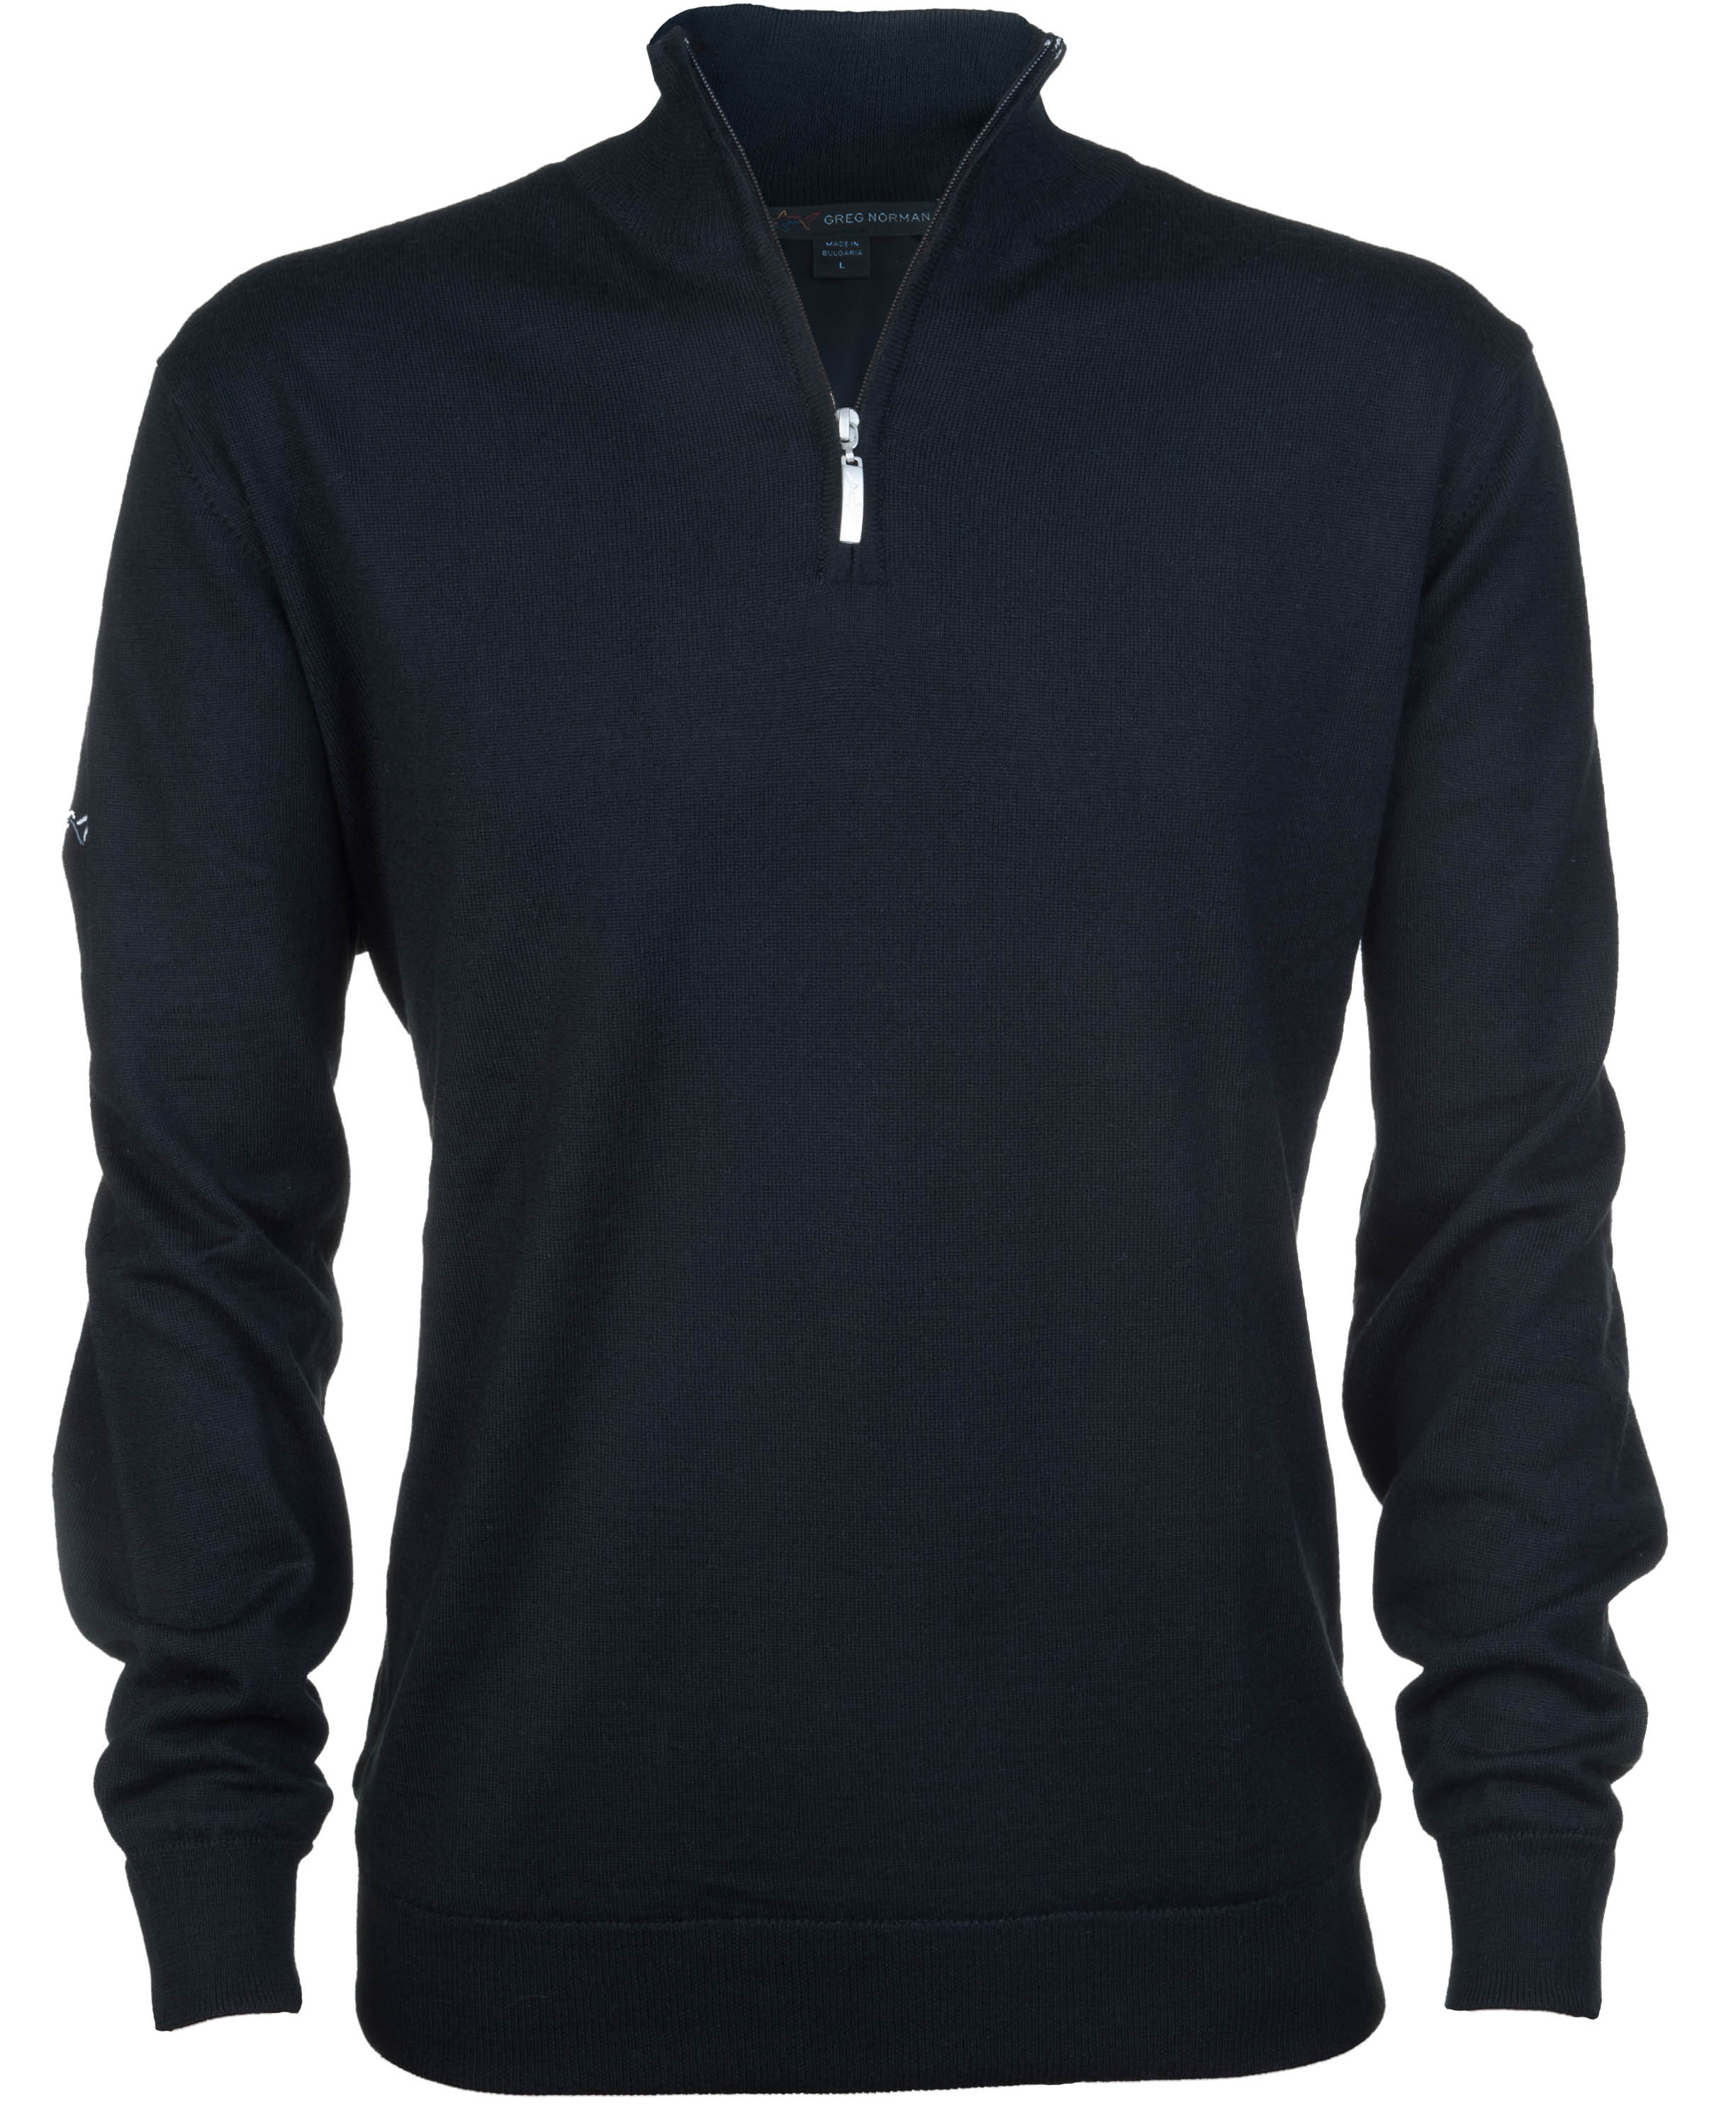 Greg Norman Windbreaker Lined 1/4 Zip Sweater, black